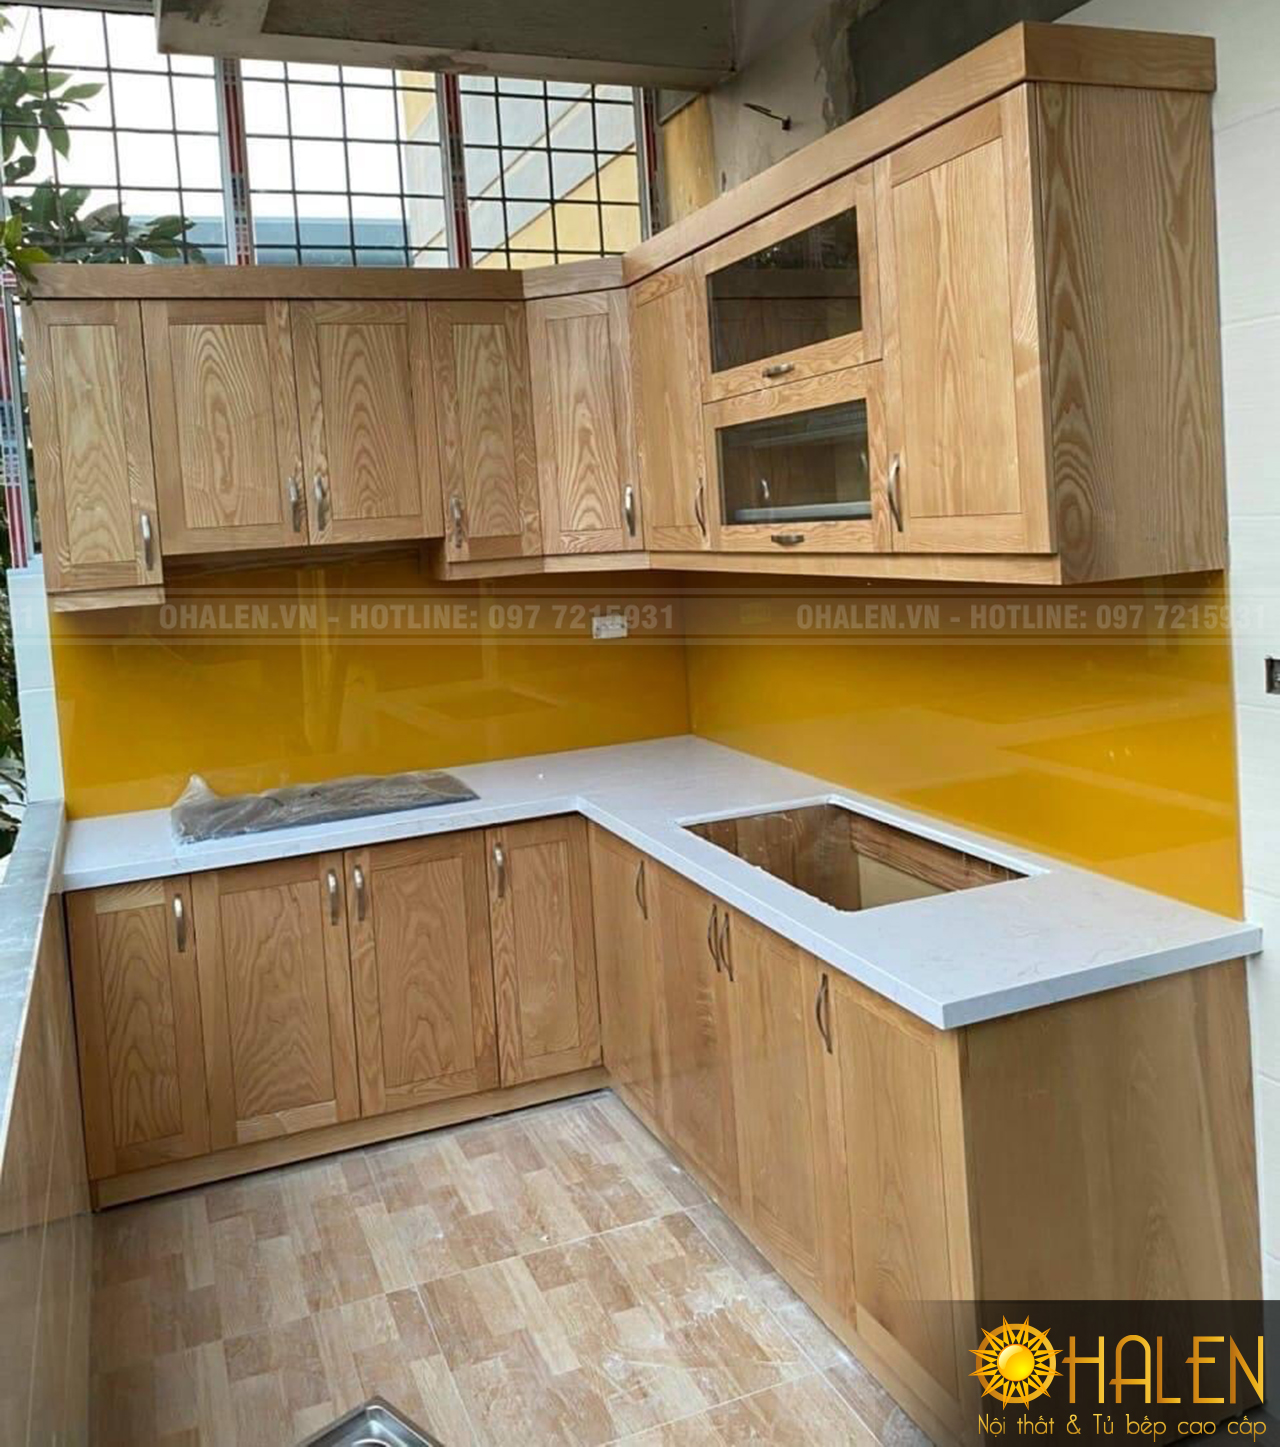 Thi công hoàn thiện tủ bếp 2 tầng chất liệu gỗ sồi Nga phun sơn PU màu vàng nhạt cho gia chủ